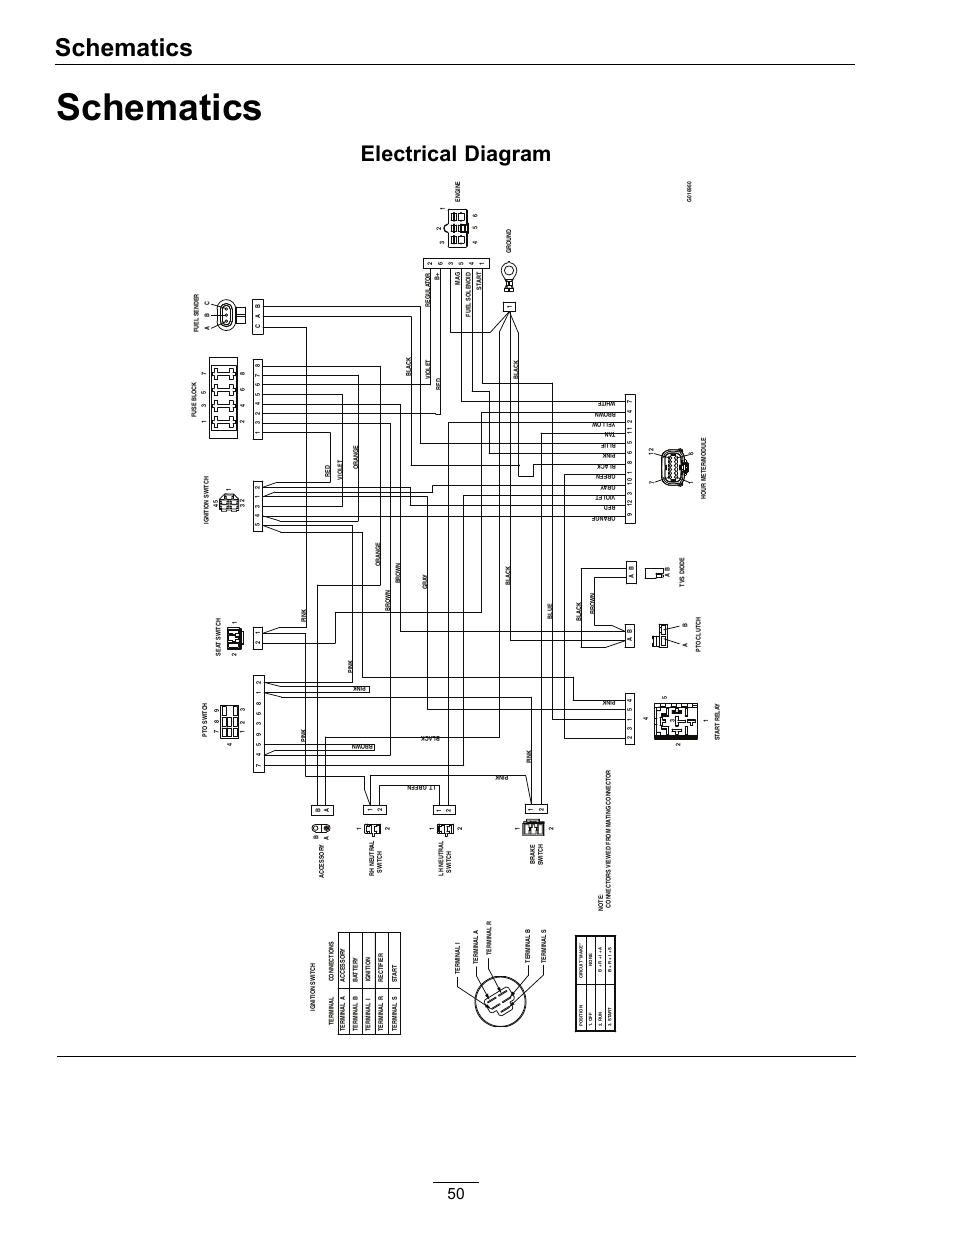 everstart maxx 200 battery charger wiring diagram